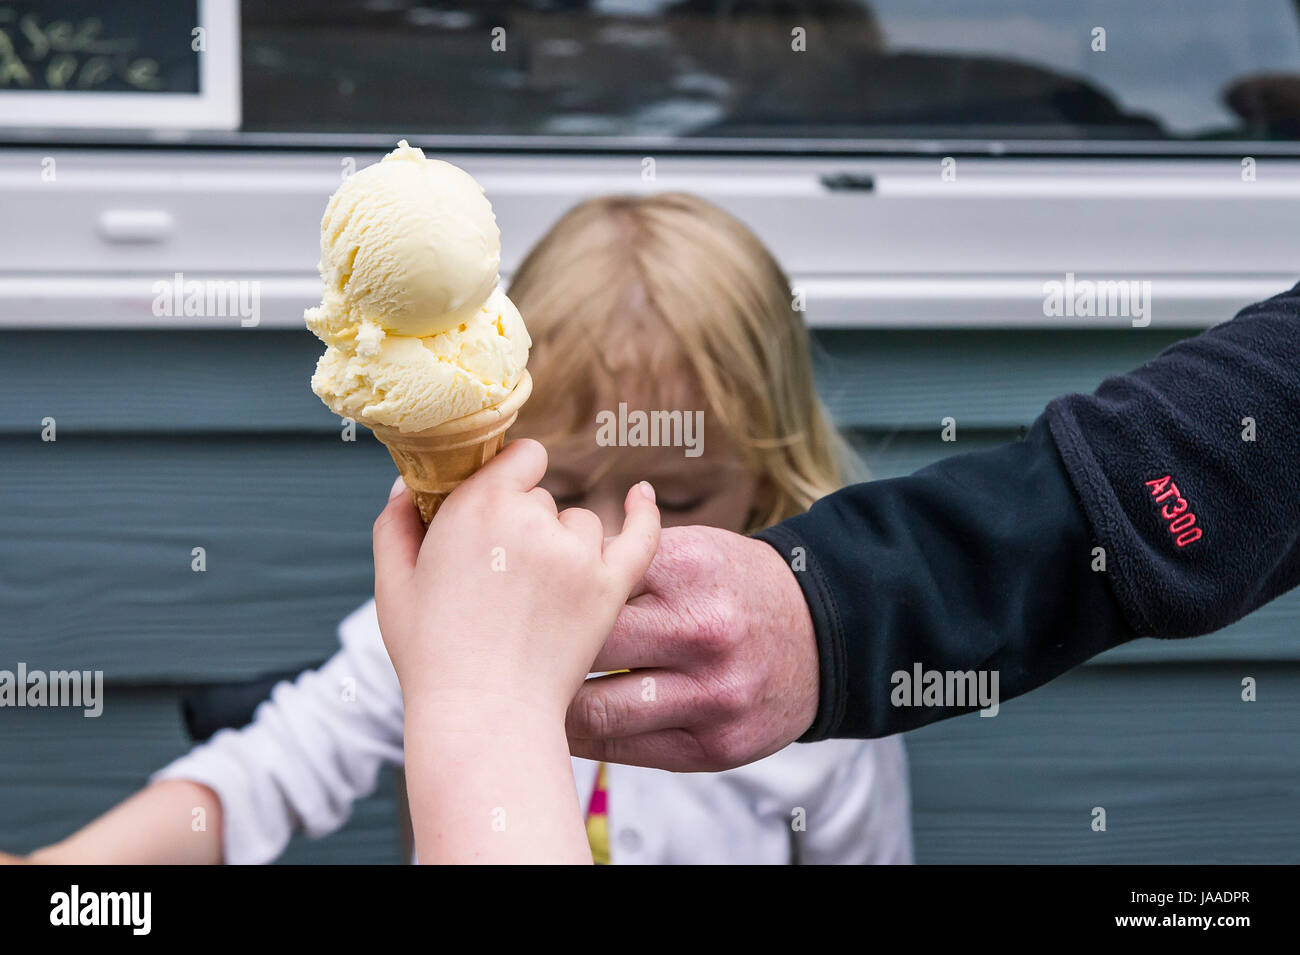 Un adulto dando un cucurucho de helado a un niño. Foto de stock